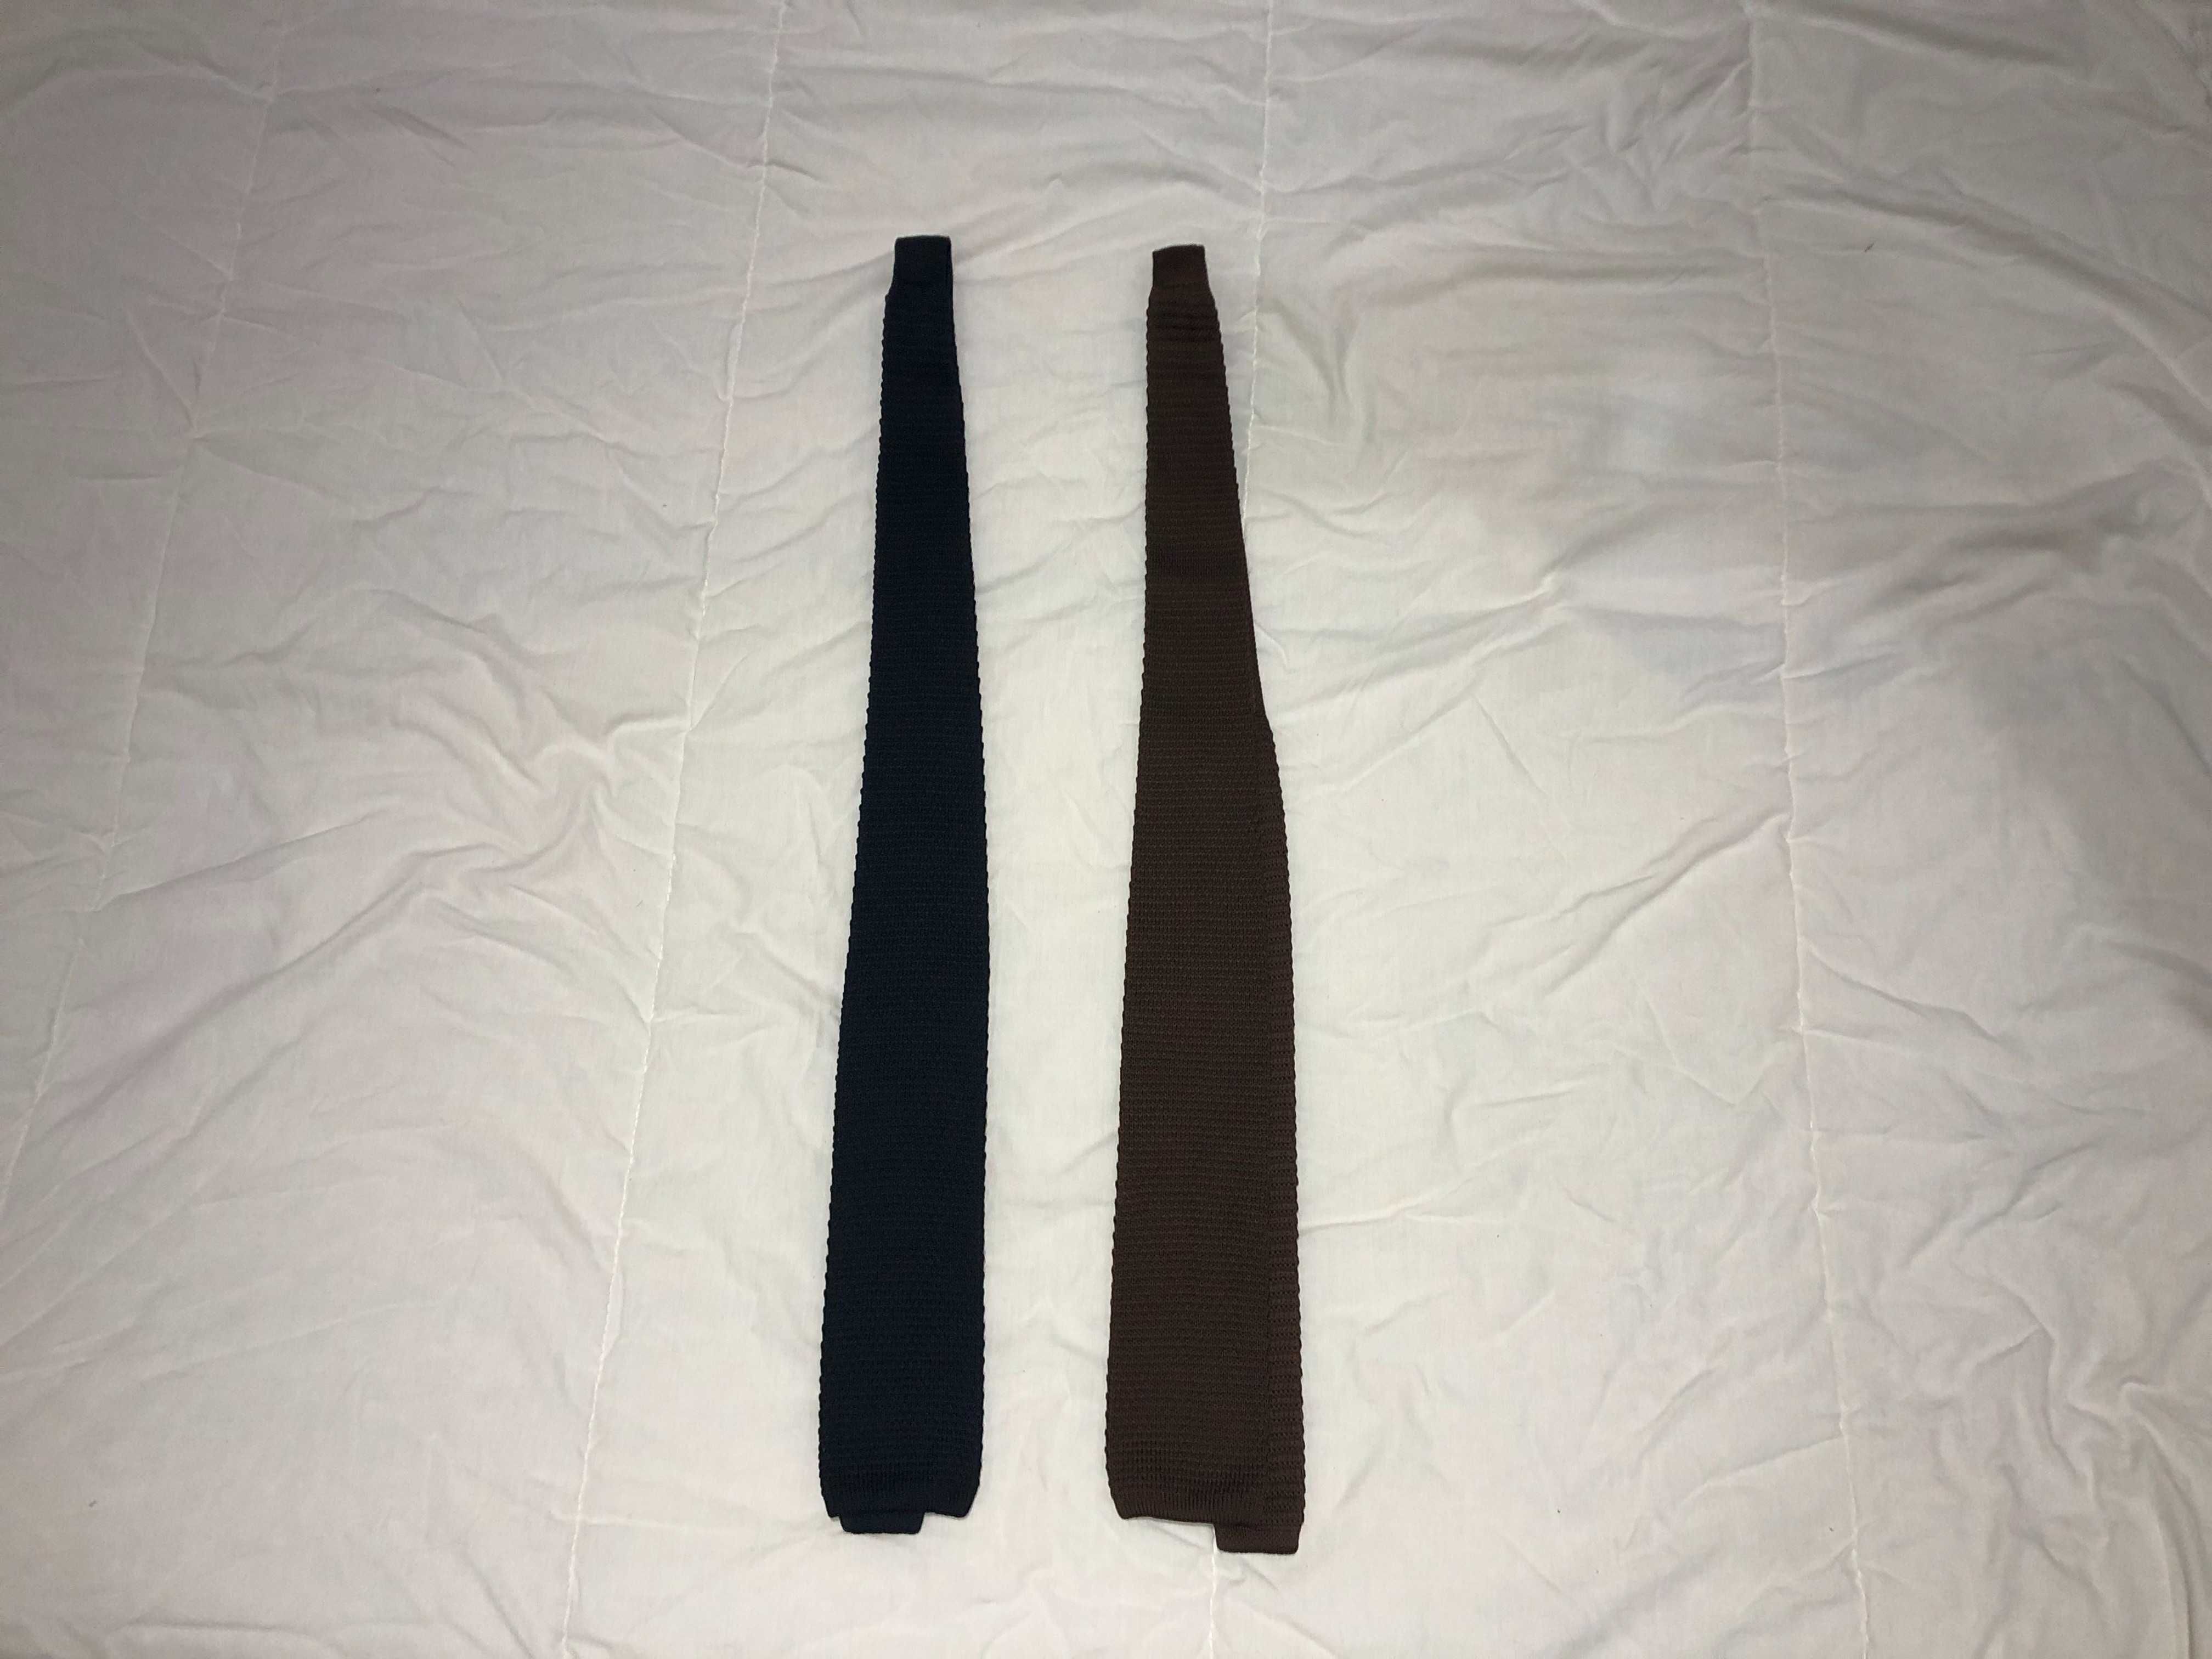 Gravatas Originais - Azul e Castanho - 5€ Cada